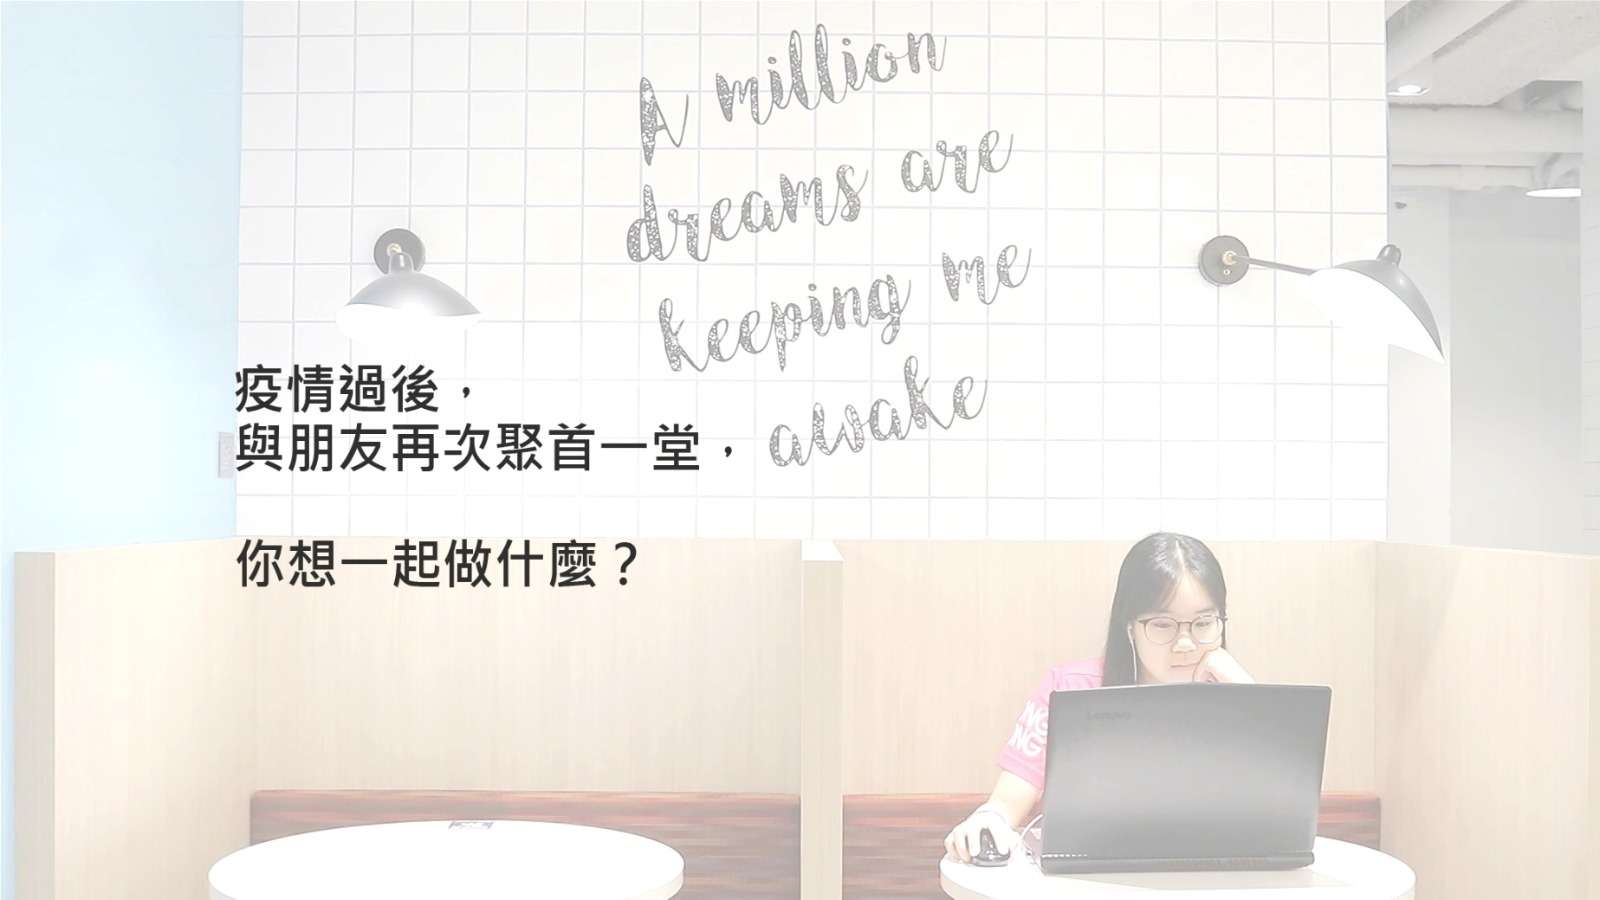 「2021/22香港青年大使計劃」宣傳片